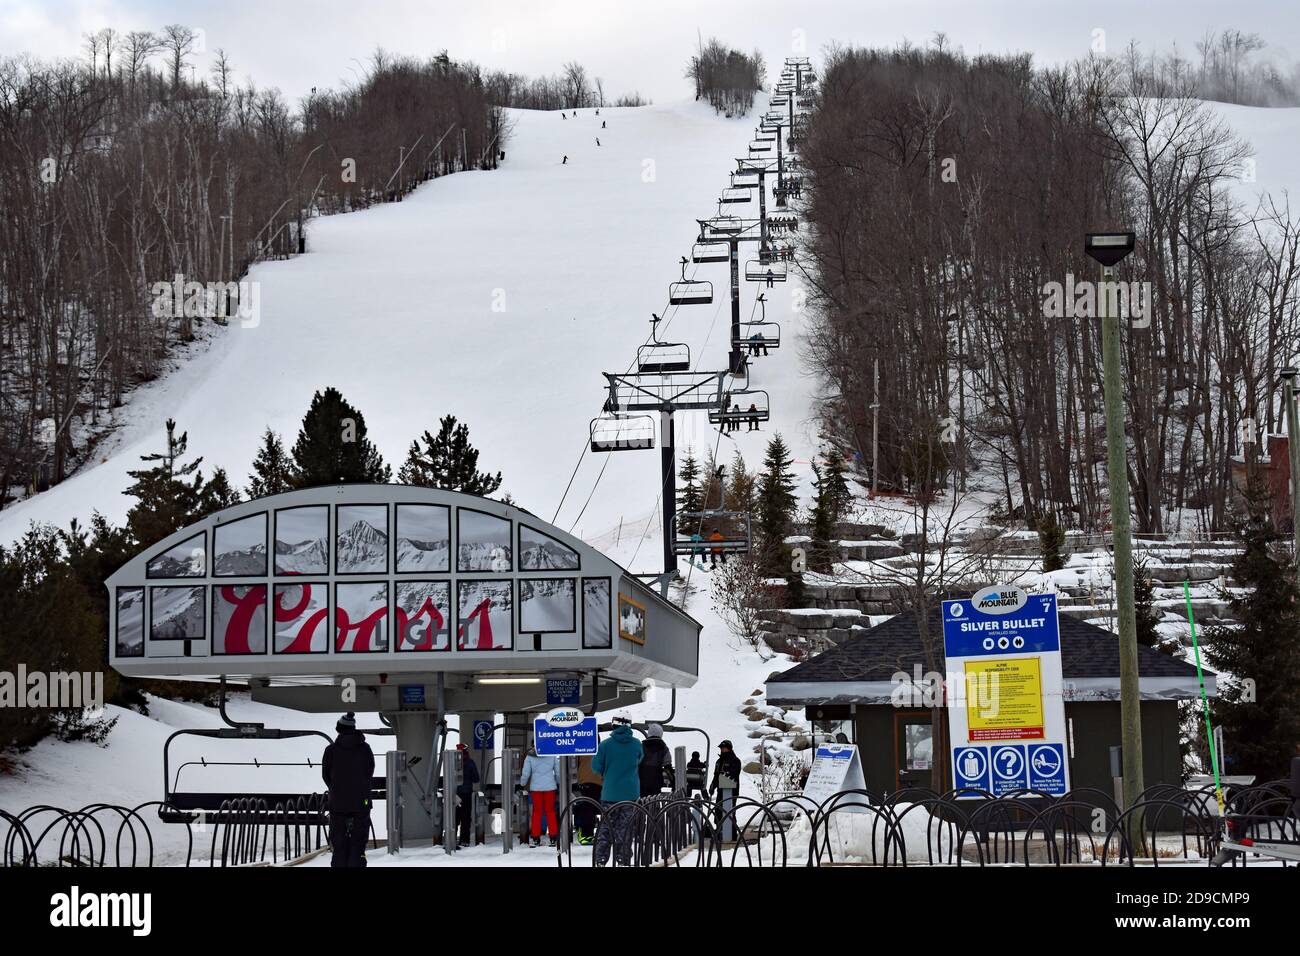 Ein Sessellift für Skifahrer und Snowboarder namens Silver Bullet im Blue Mountain Resort in Ontario, Kanada. Werbung für Coors ist auf dem Sessellift. Stockfoto